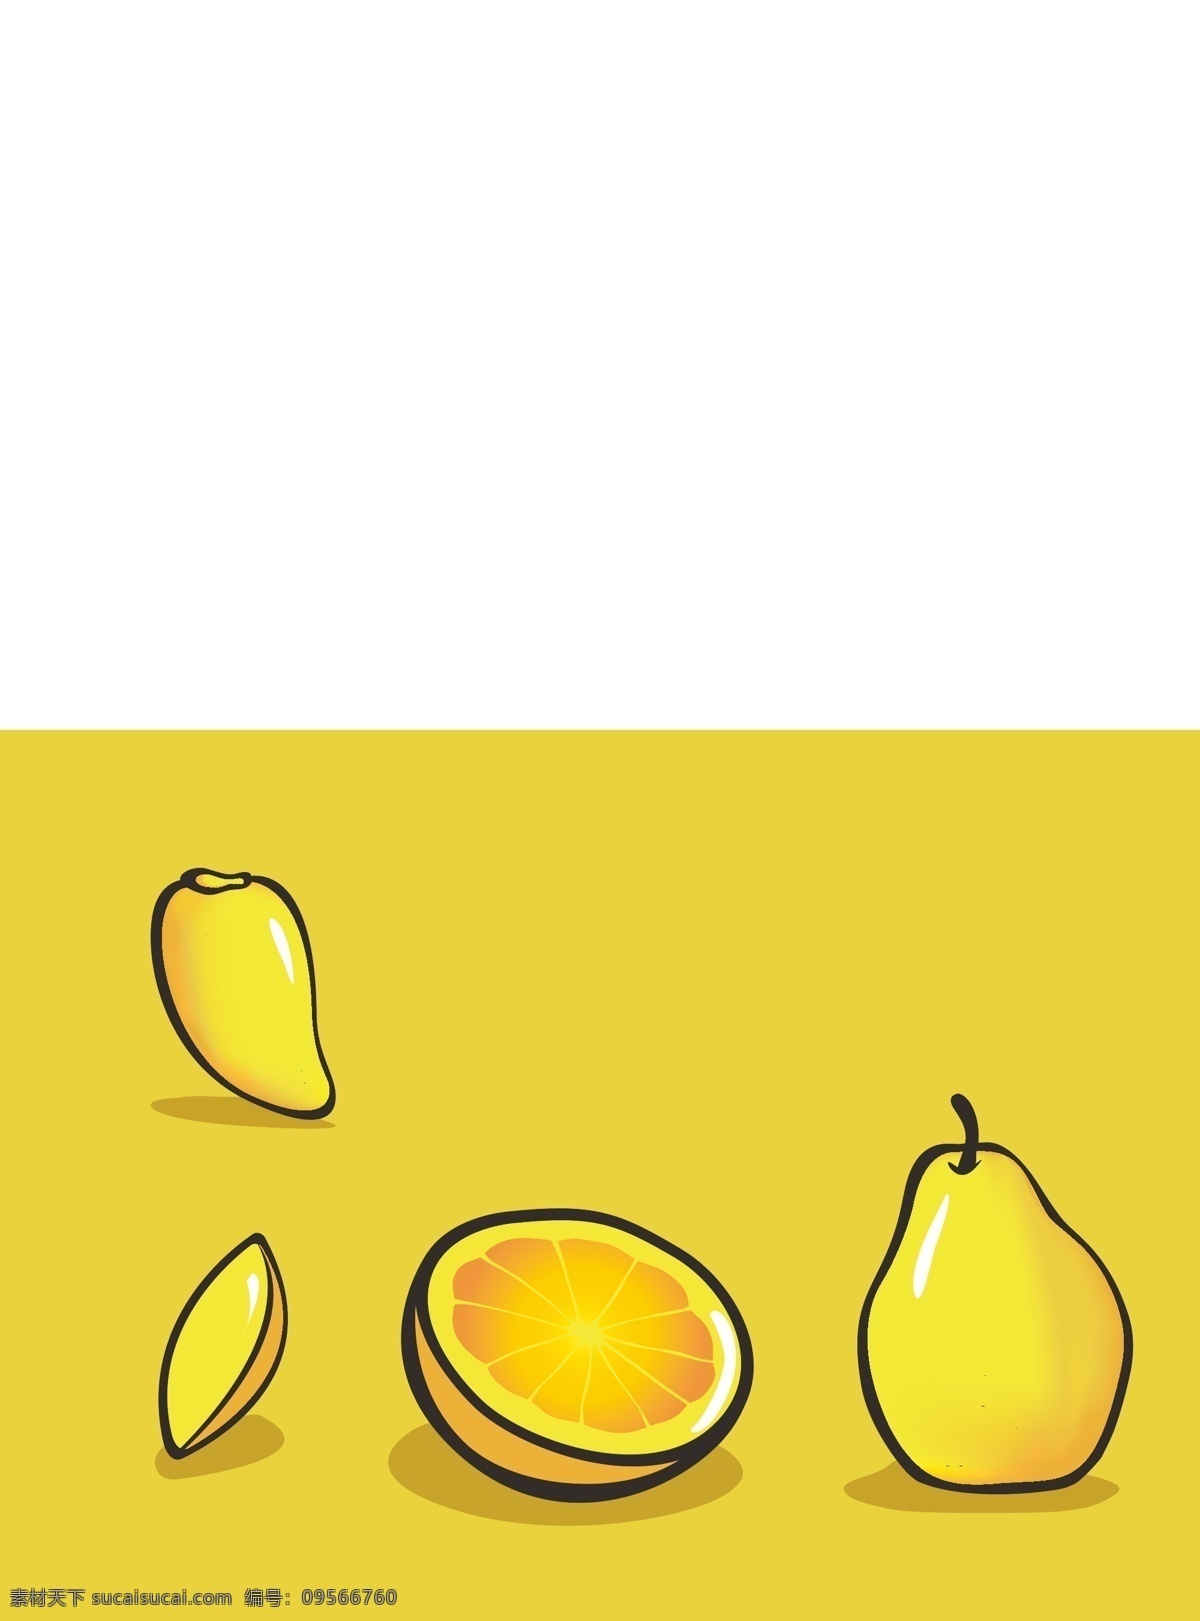 手绘水果 水果 手绘 橙子 梨子 黄色